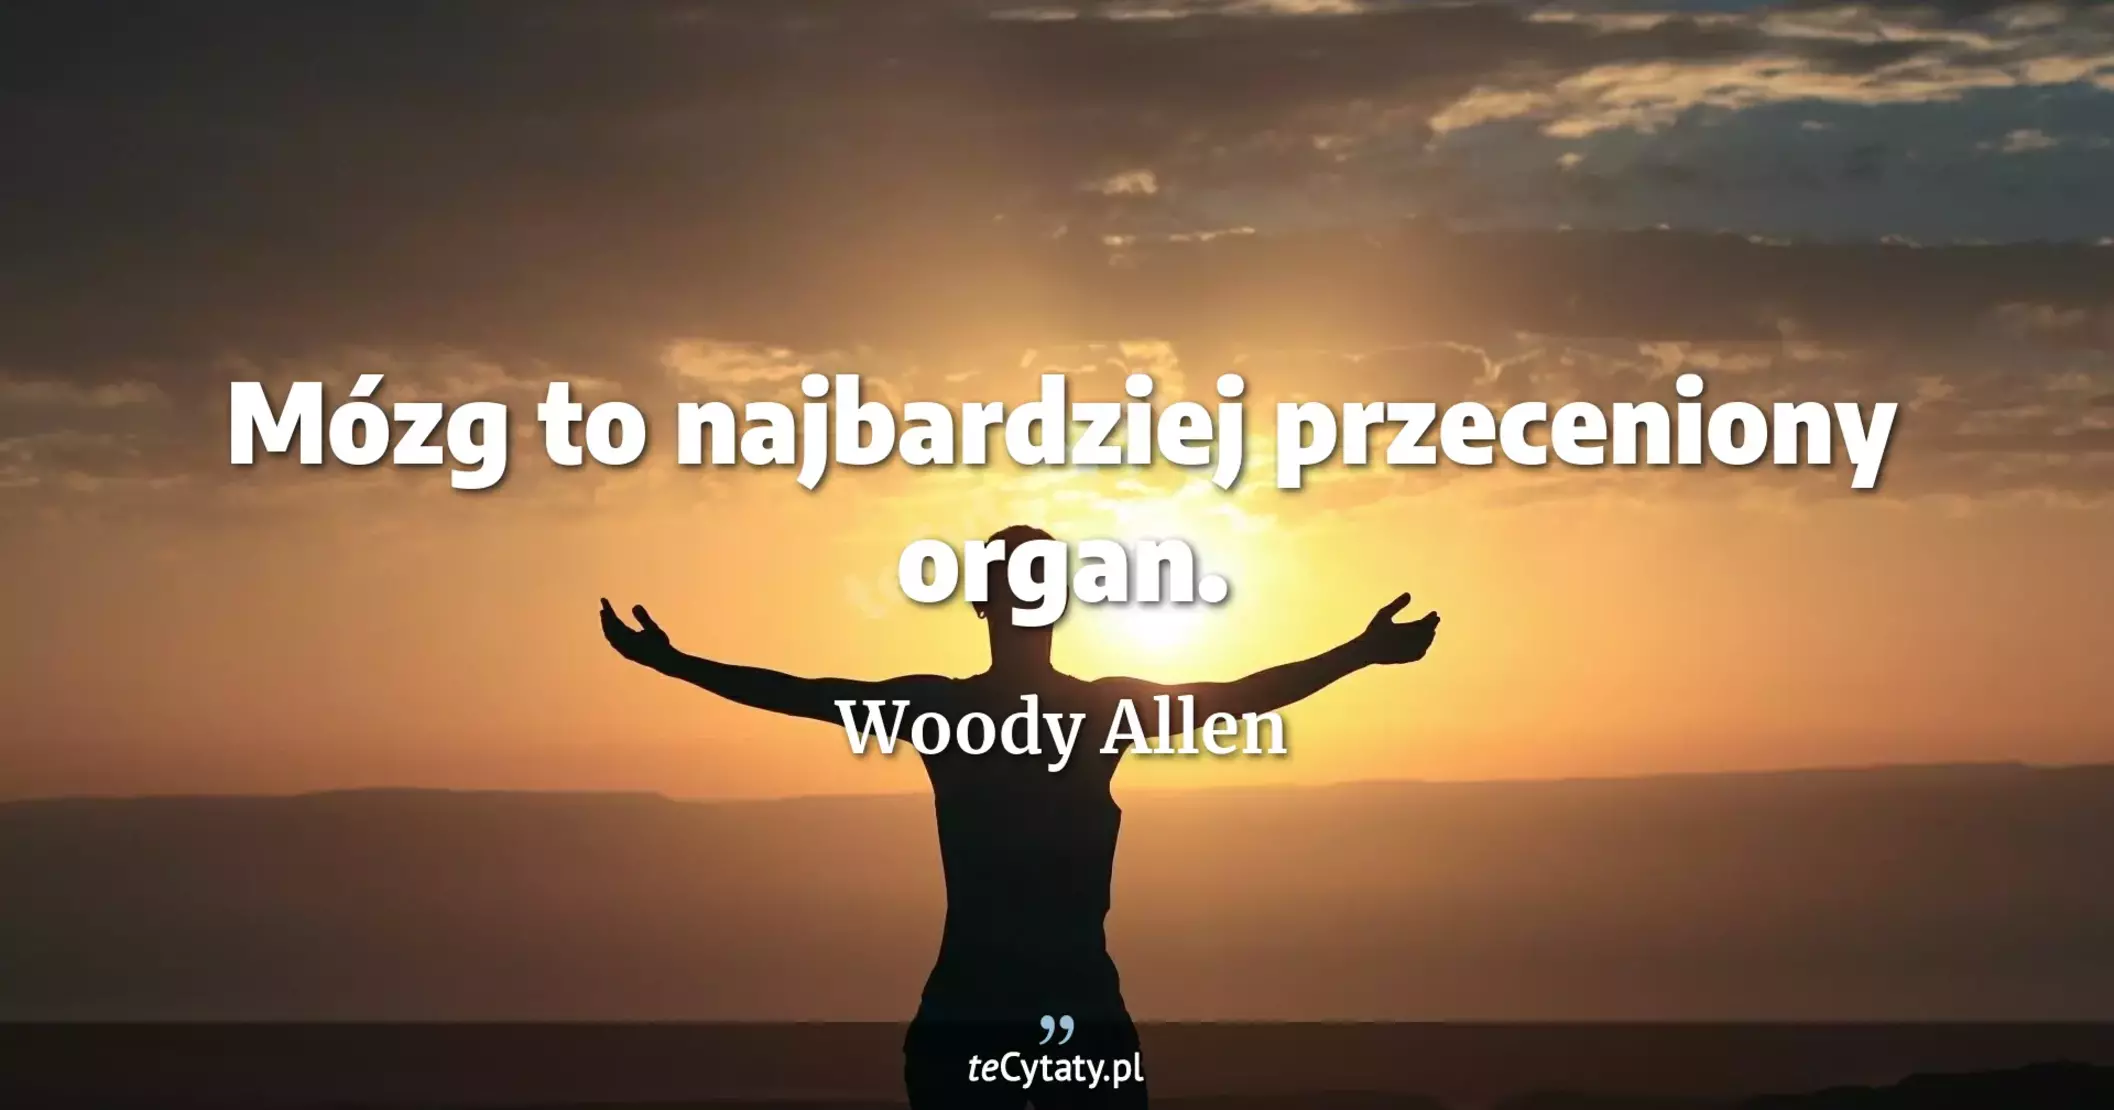 Mózg to najbardziej przeceniony organ. - Woody Allen